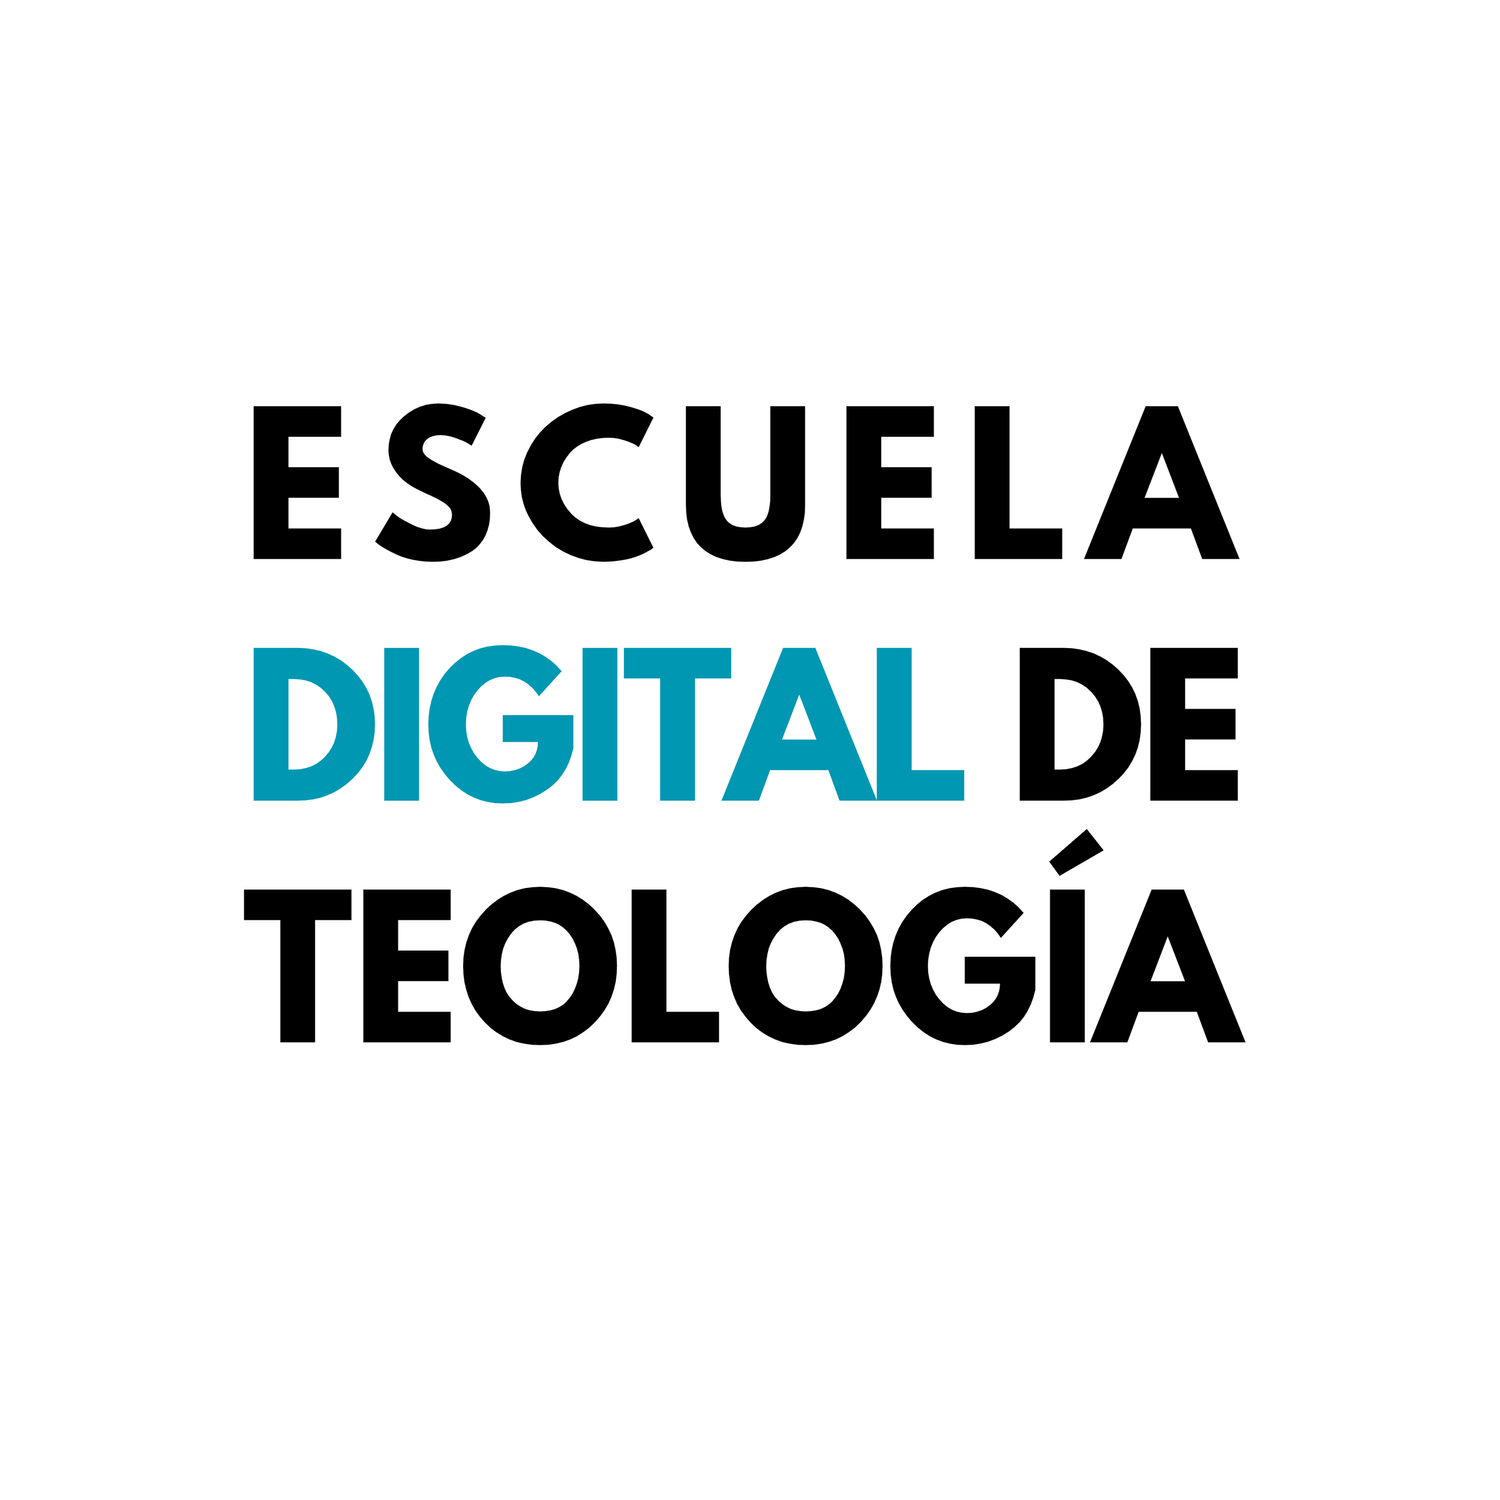 Escuela Digital de Teología